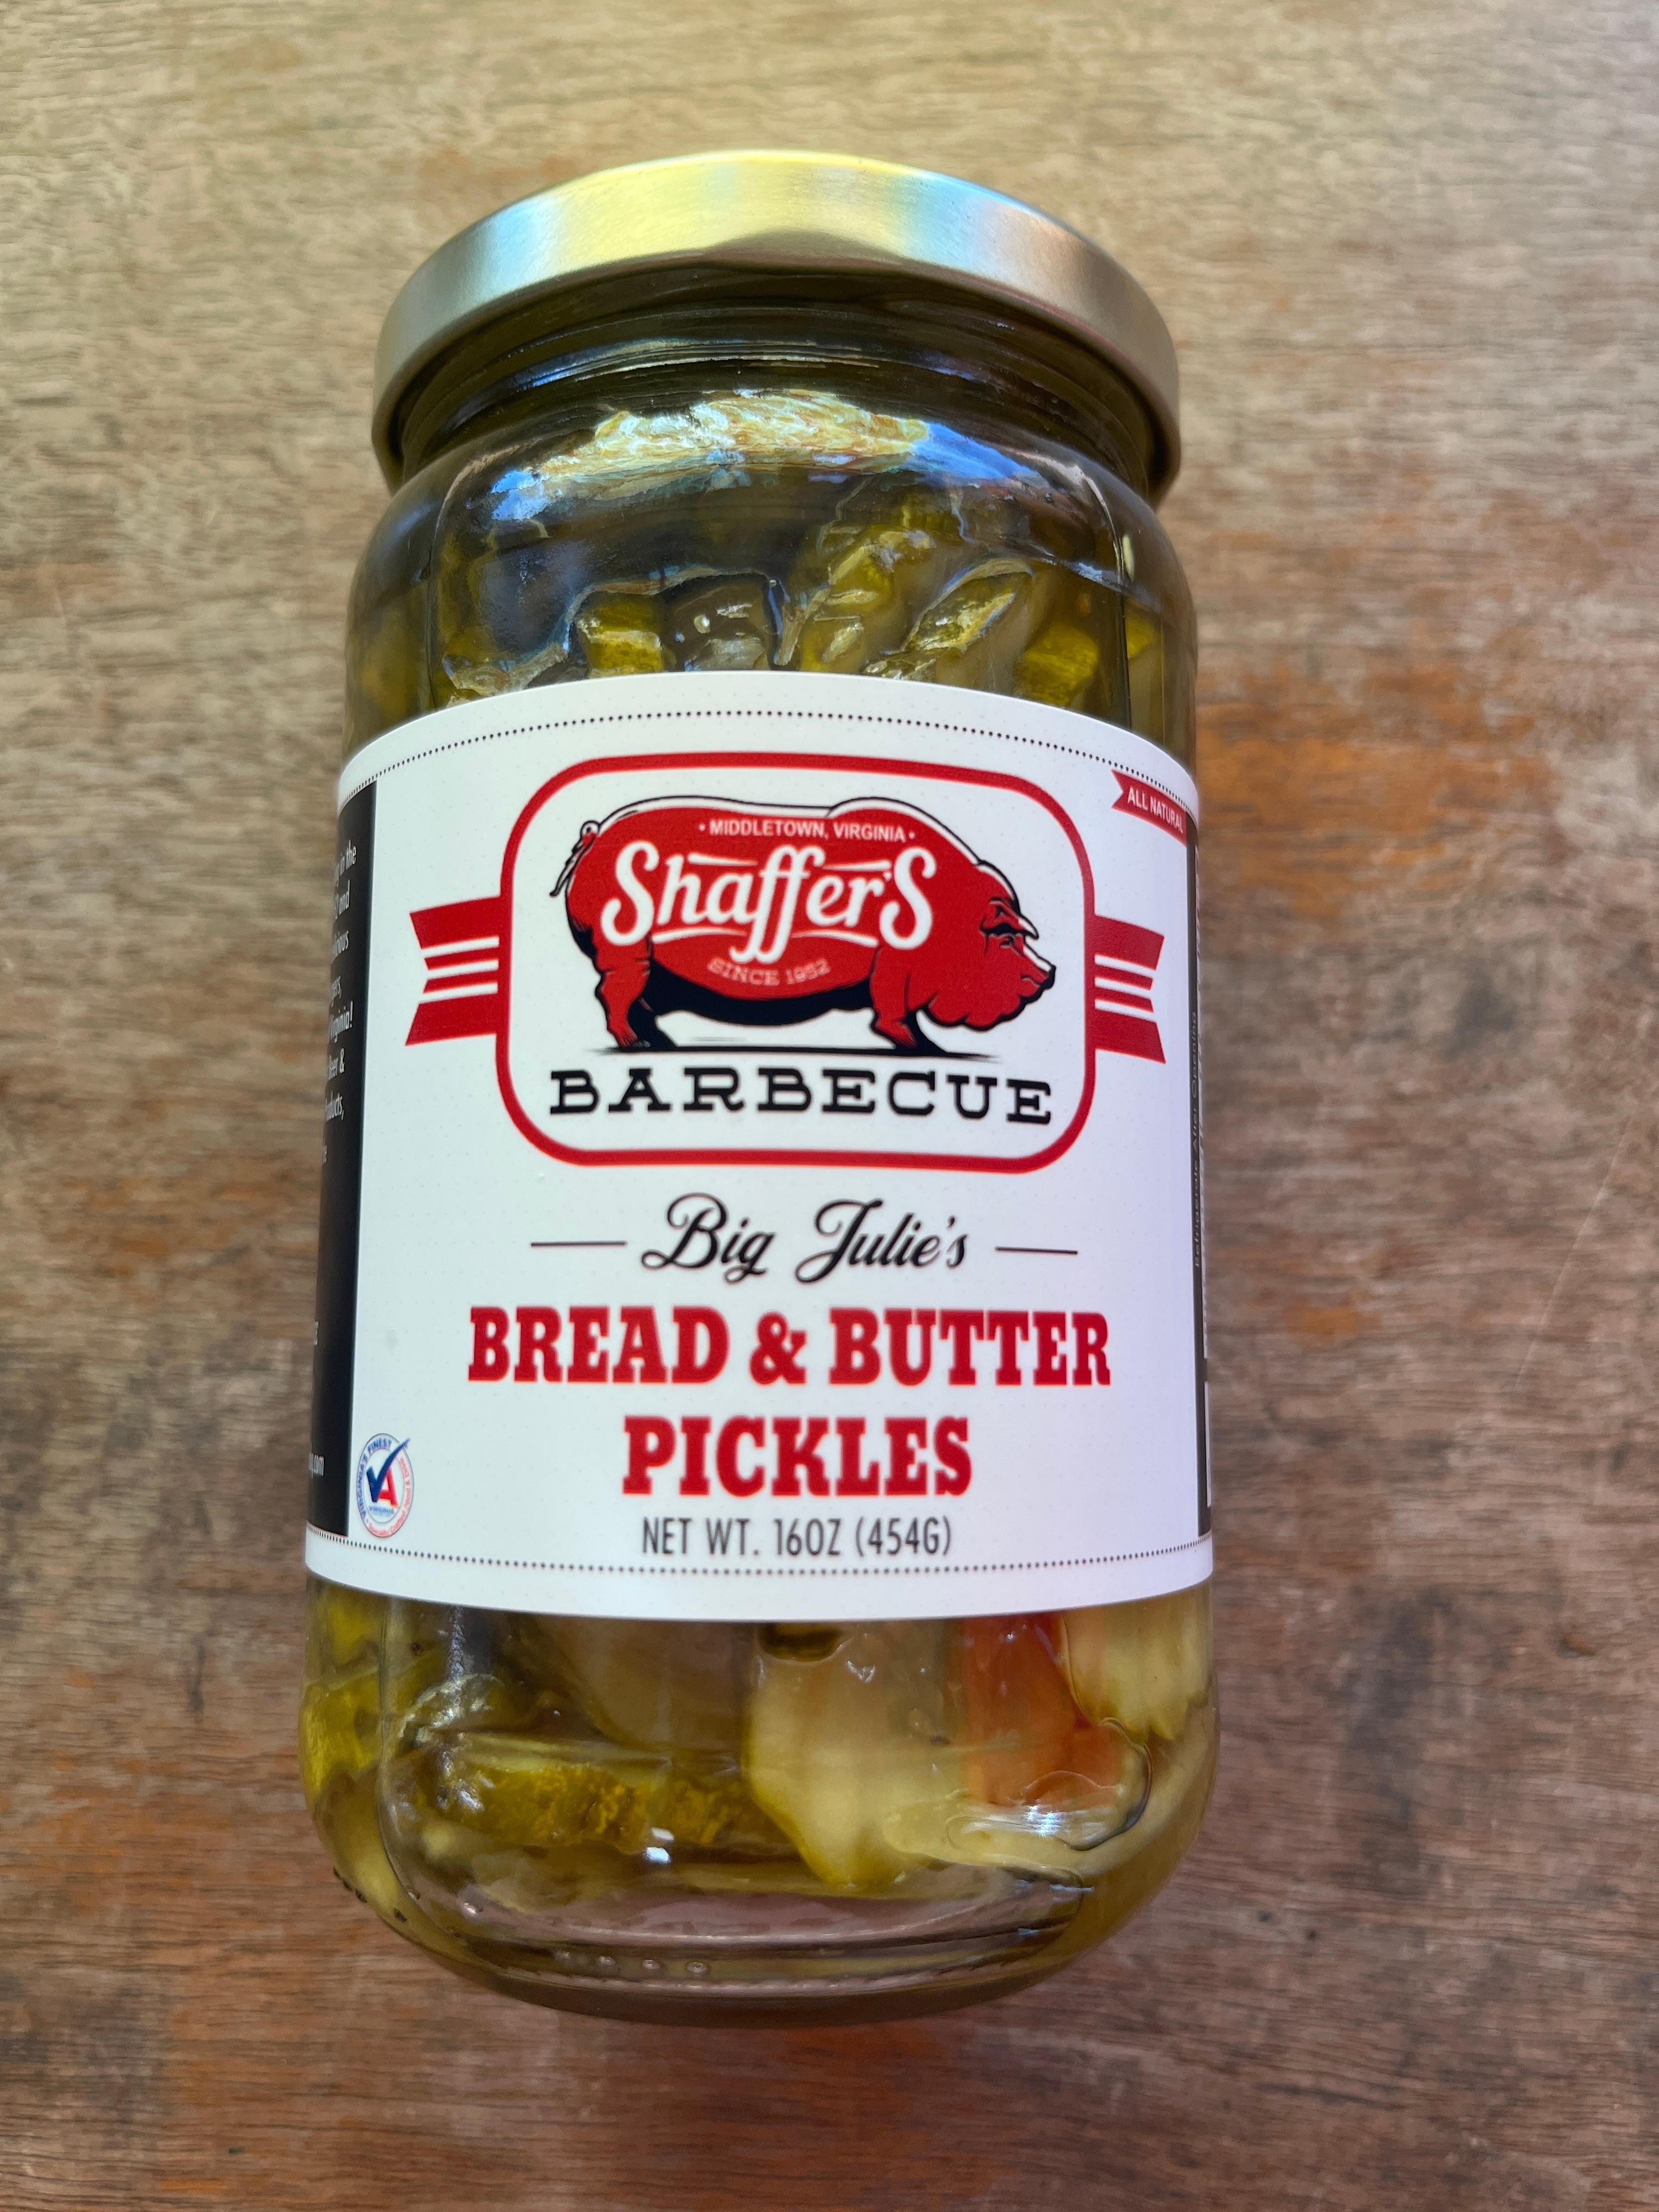 Big Julie's Bread & Butter Pickles